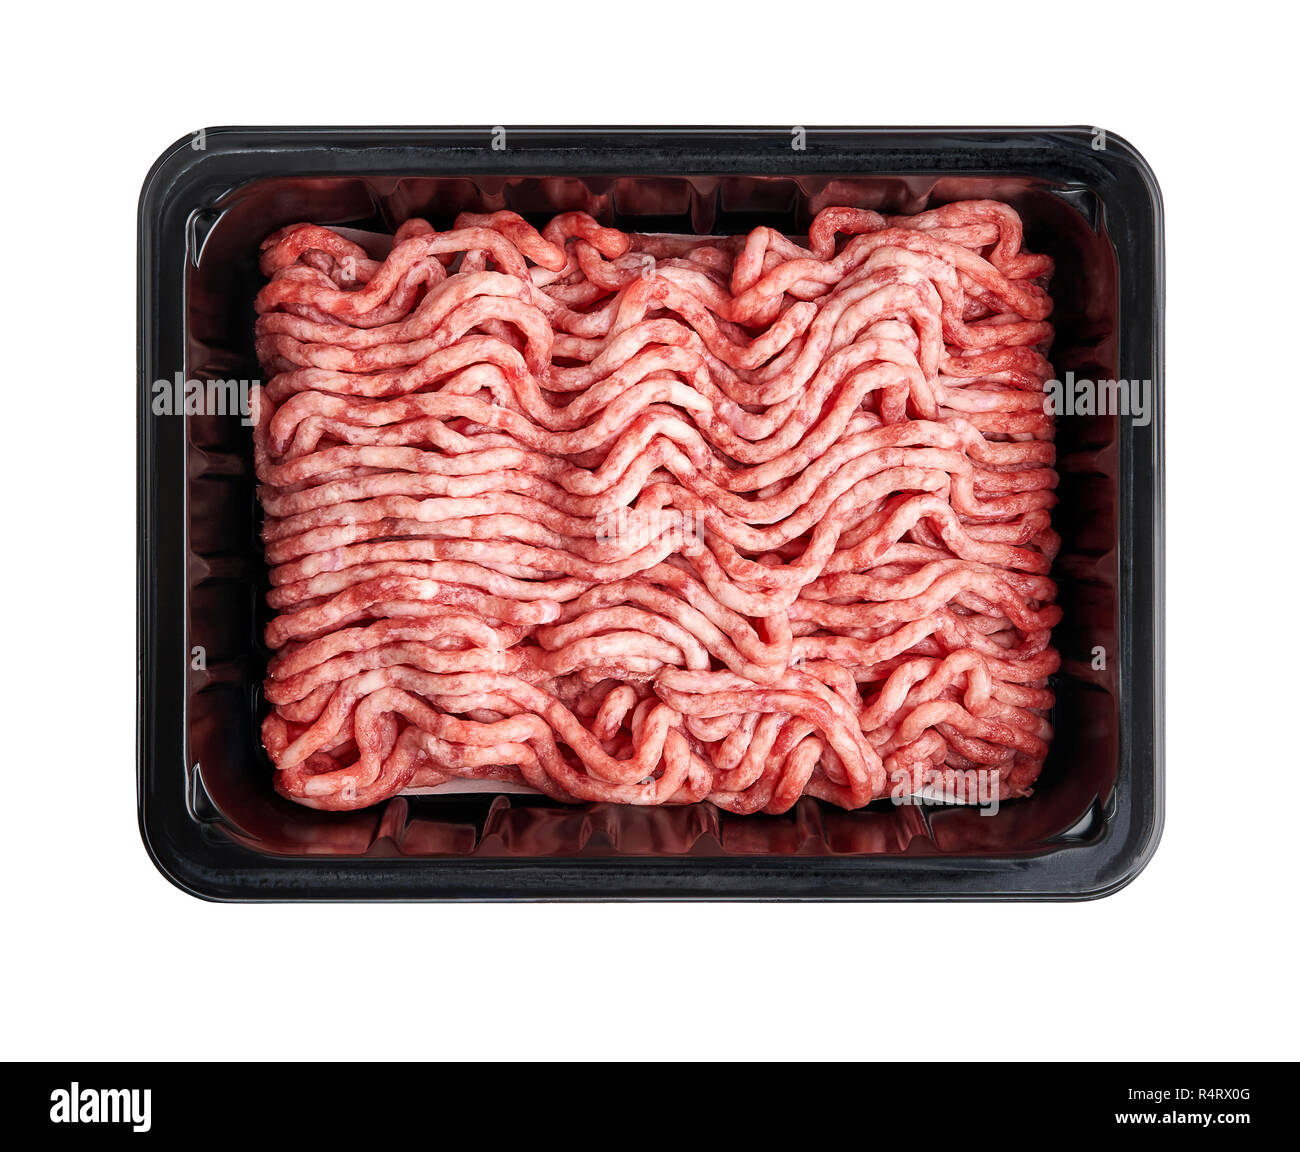 Bac en plastique noir avec de la viande hachée de porc frais isolé sur fond blanc. La conception d'emballages pour des maquettes. Banque D'Images